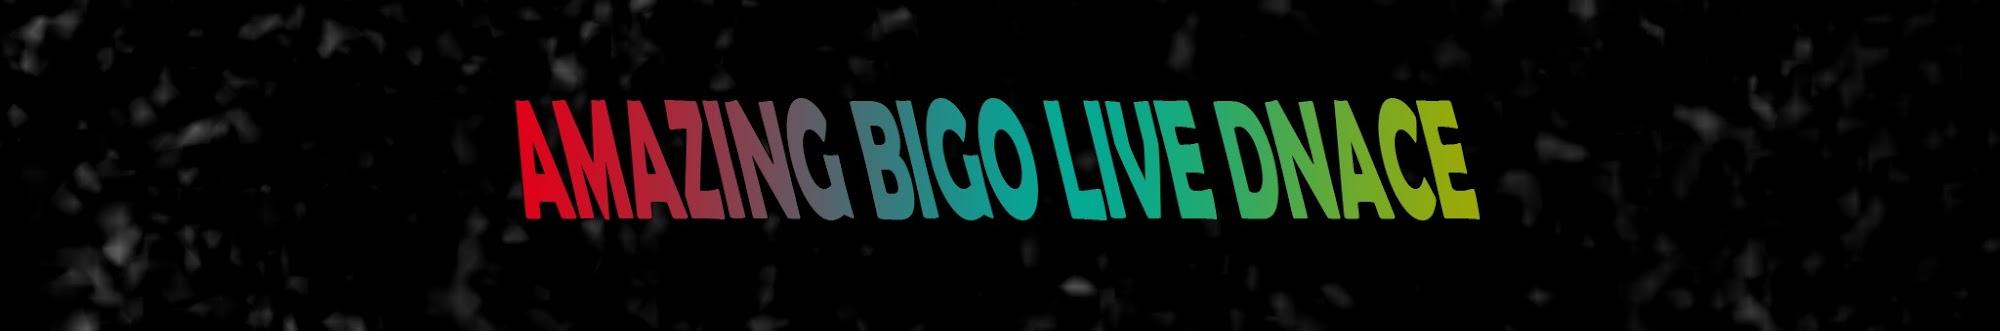 Amazing Bigo live Dance